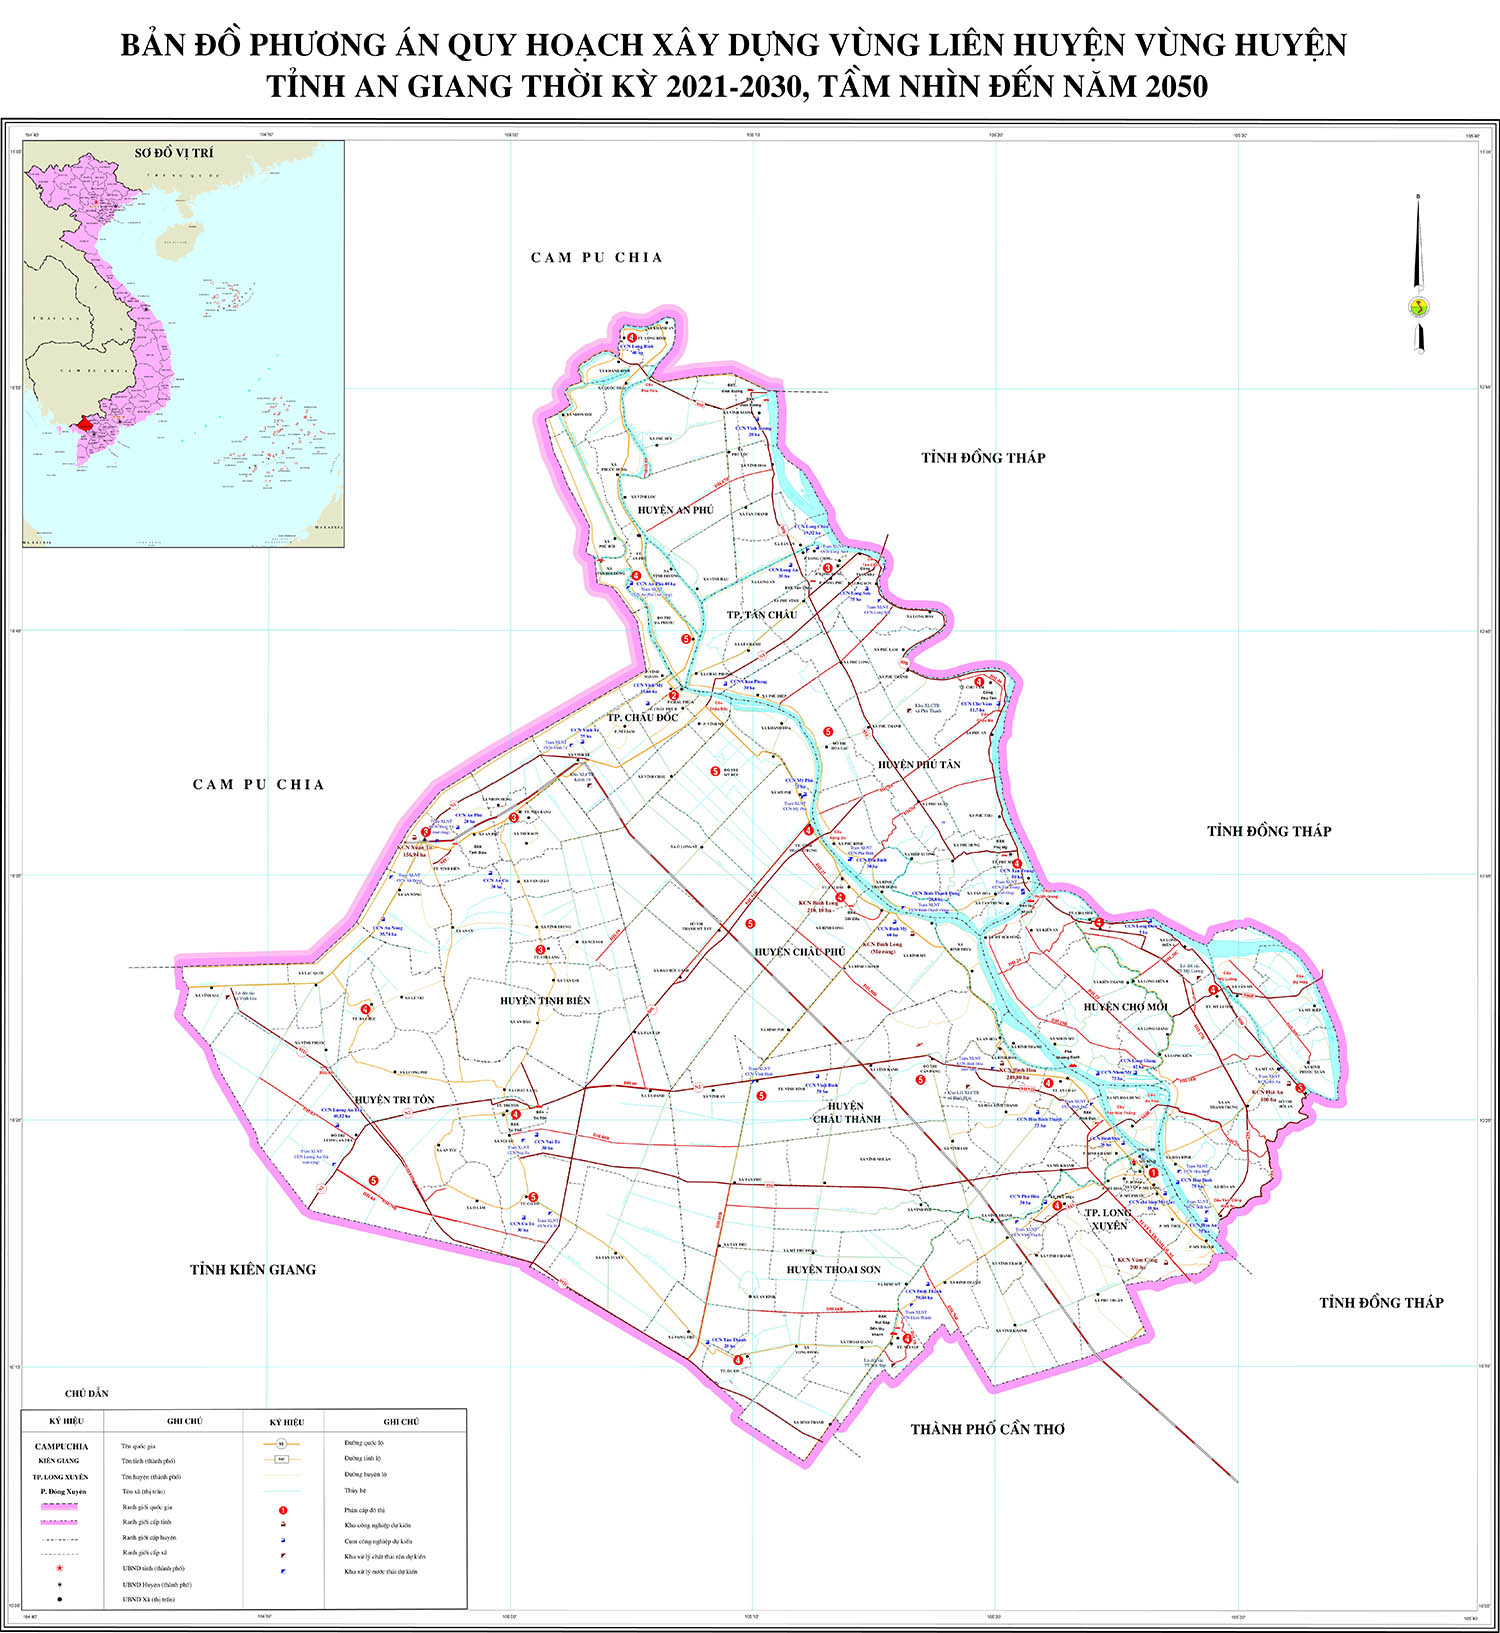 Bản đồ phương án quy hoạch vùng liên huyện tỉnh An Giang đến năm 2030